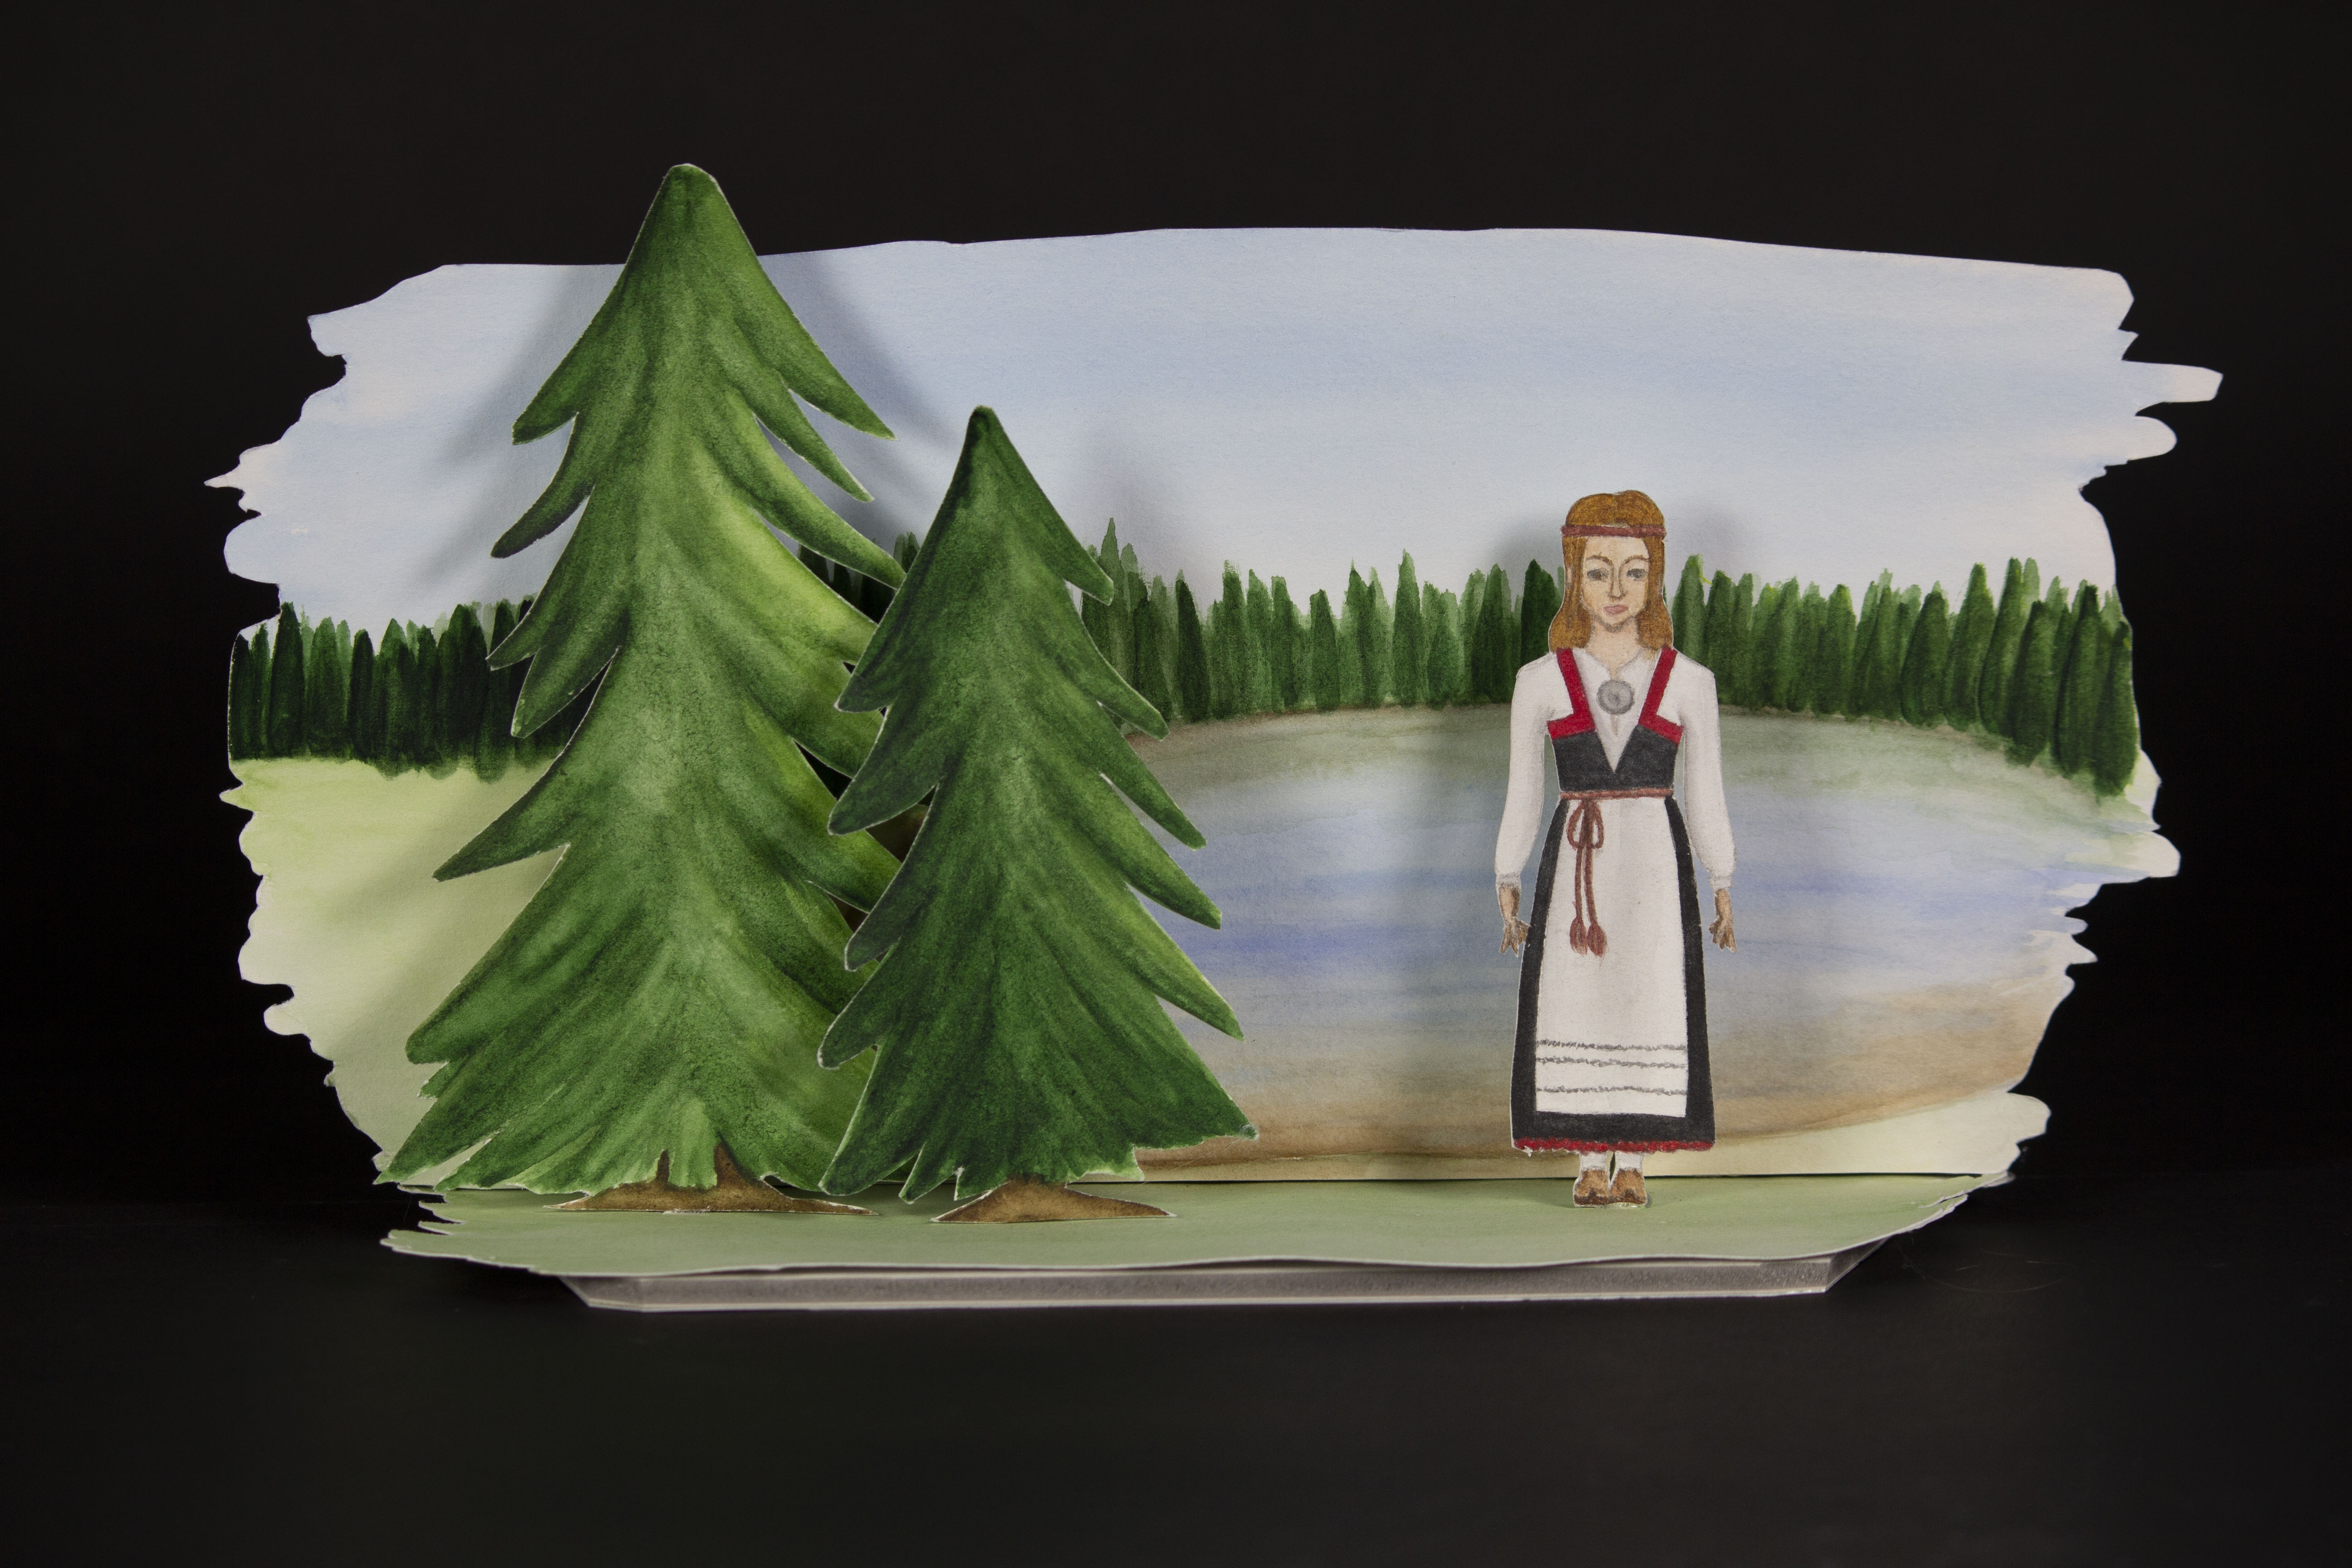 kuva 3d taideteoksesta, jossa on maisema suomesta. Horisontissa näkyy kuusipuita ja järvi. Teoksen edessä on kaksi kuusipuuta ja henkilö suomen kansallispuvussa.